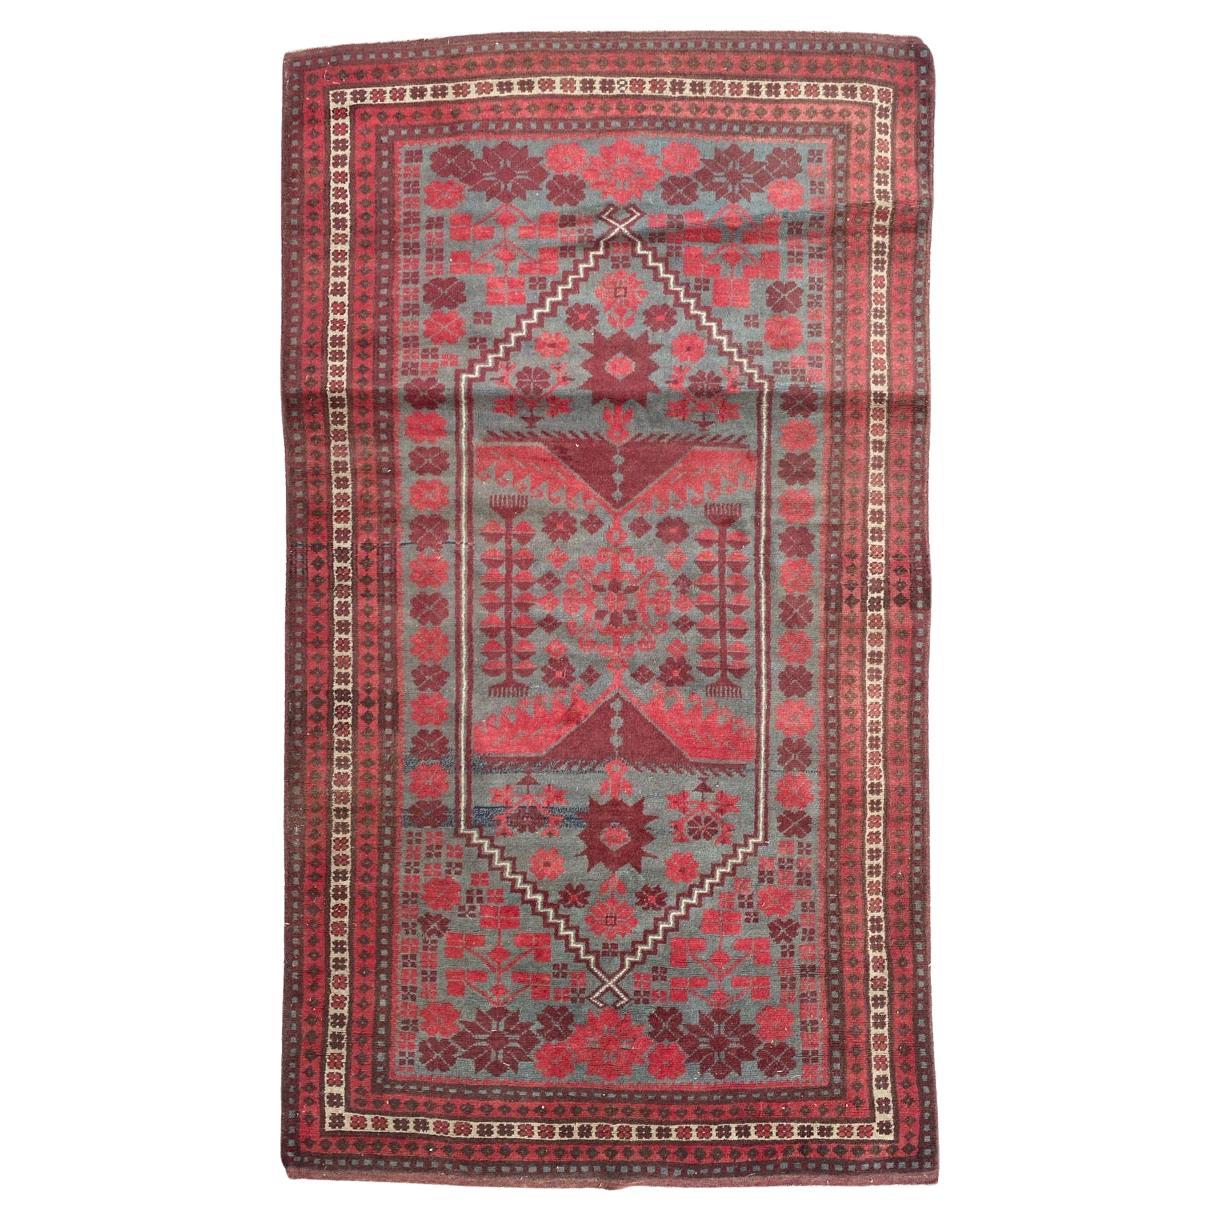 Joli tapis turc vintage Yagcibedir de Bobyrug